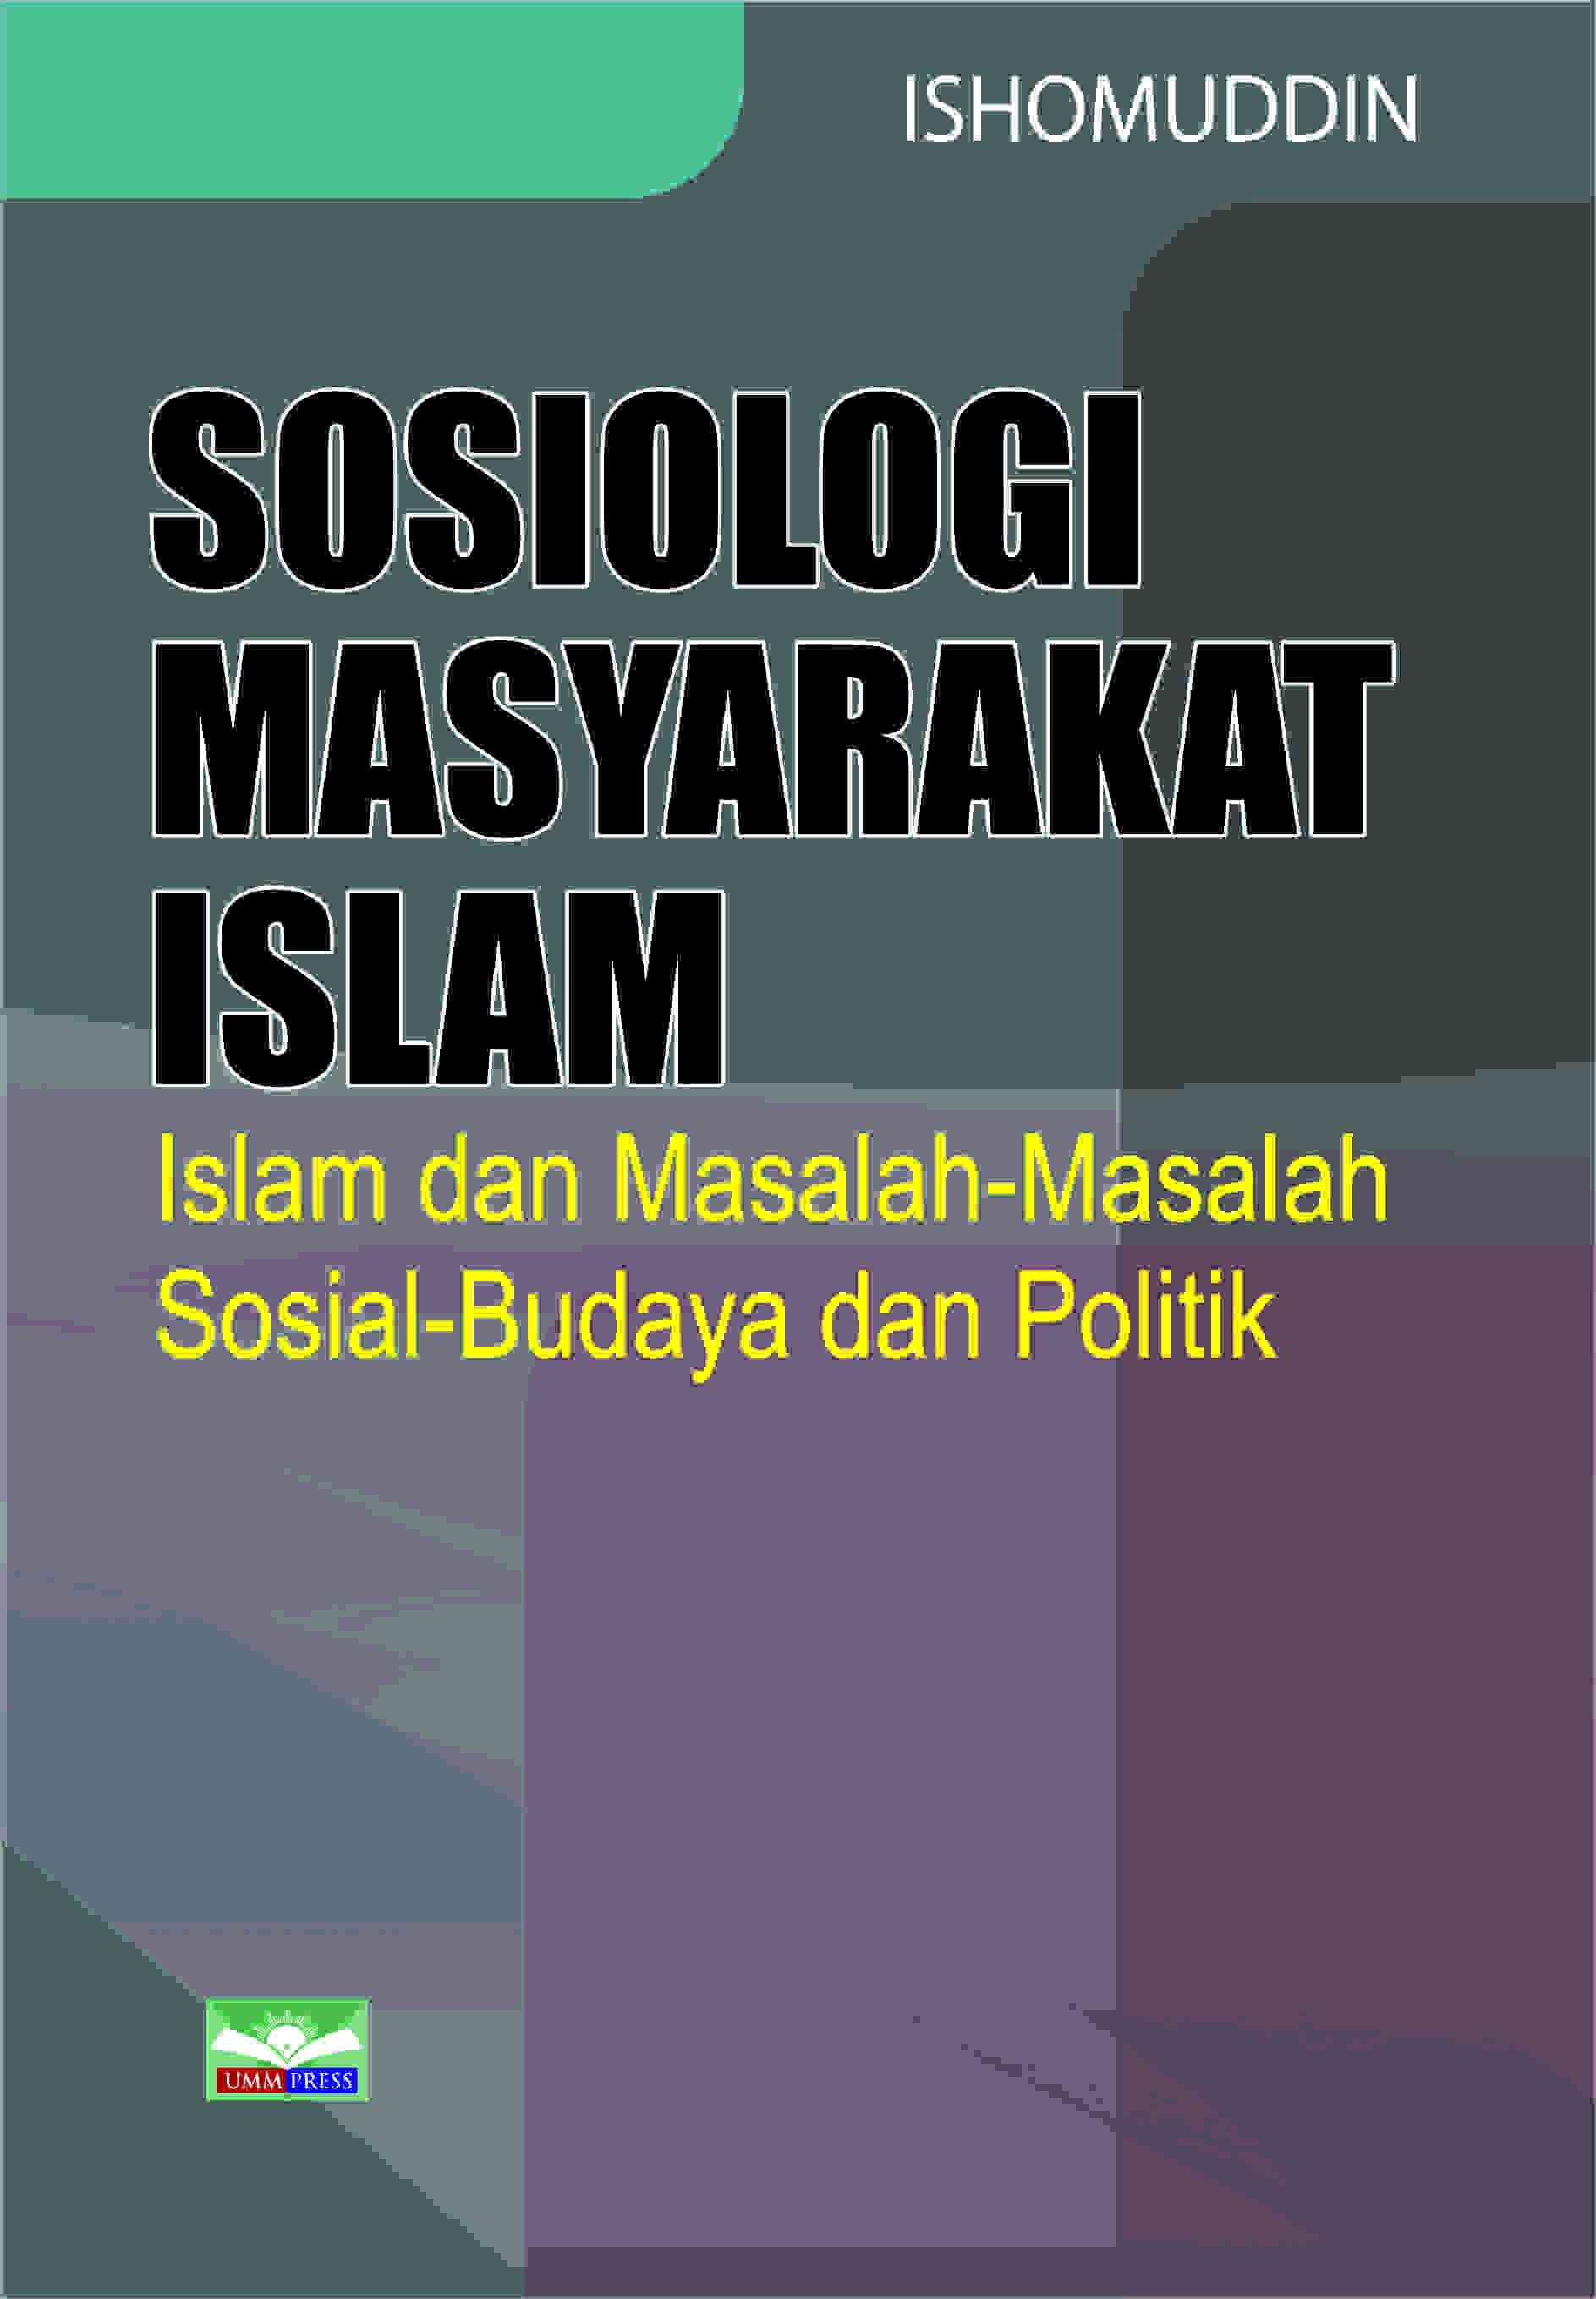 SOSIOLOGI MASYARAKAT ISLAM: ISLAM DAN MASALAH-MASALAH SOSIAL-BUDAYA DAN POLITIK